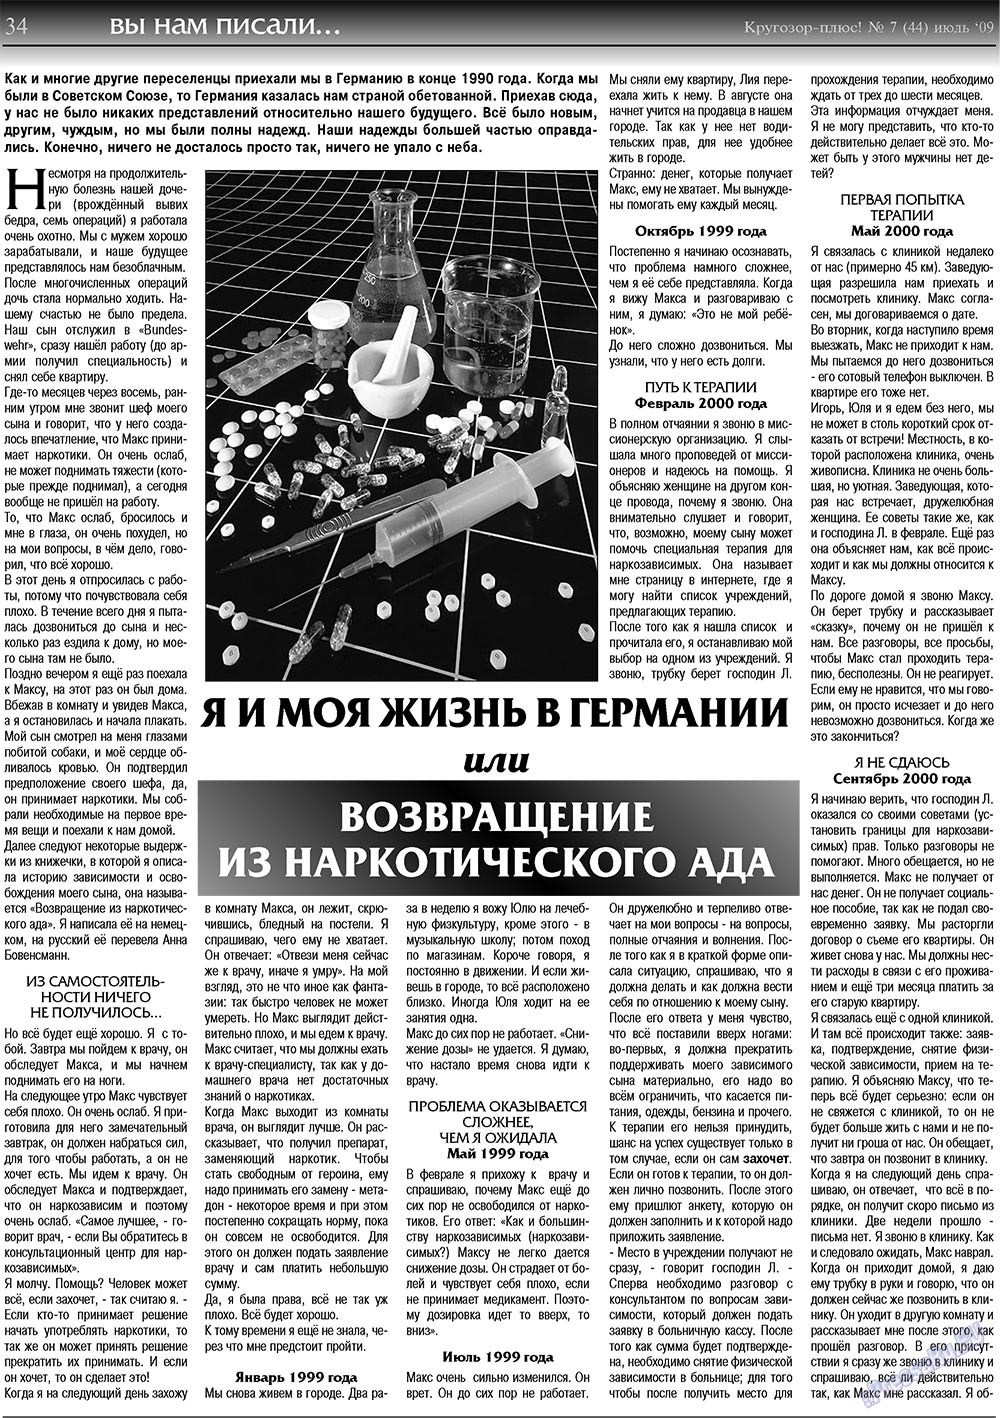 Кругозор плюс!, газета. 2009 №7 стр.34